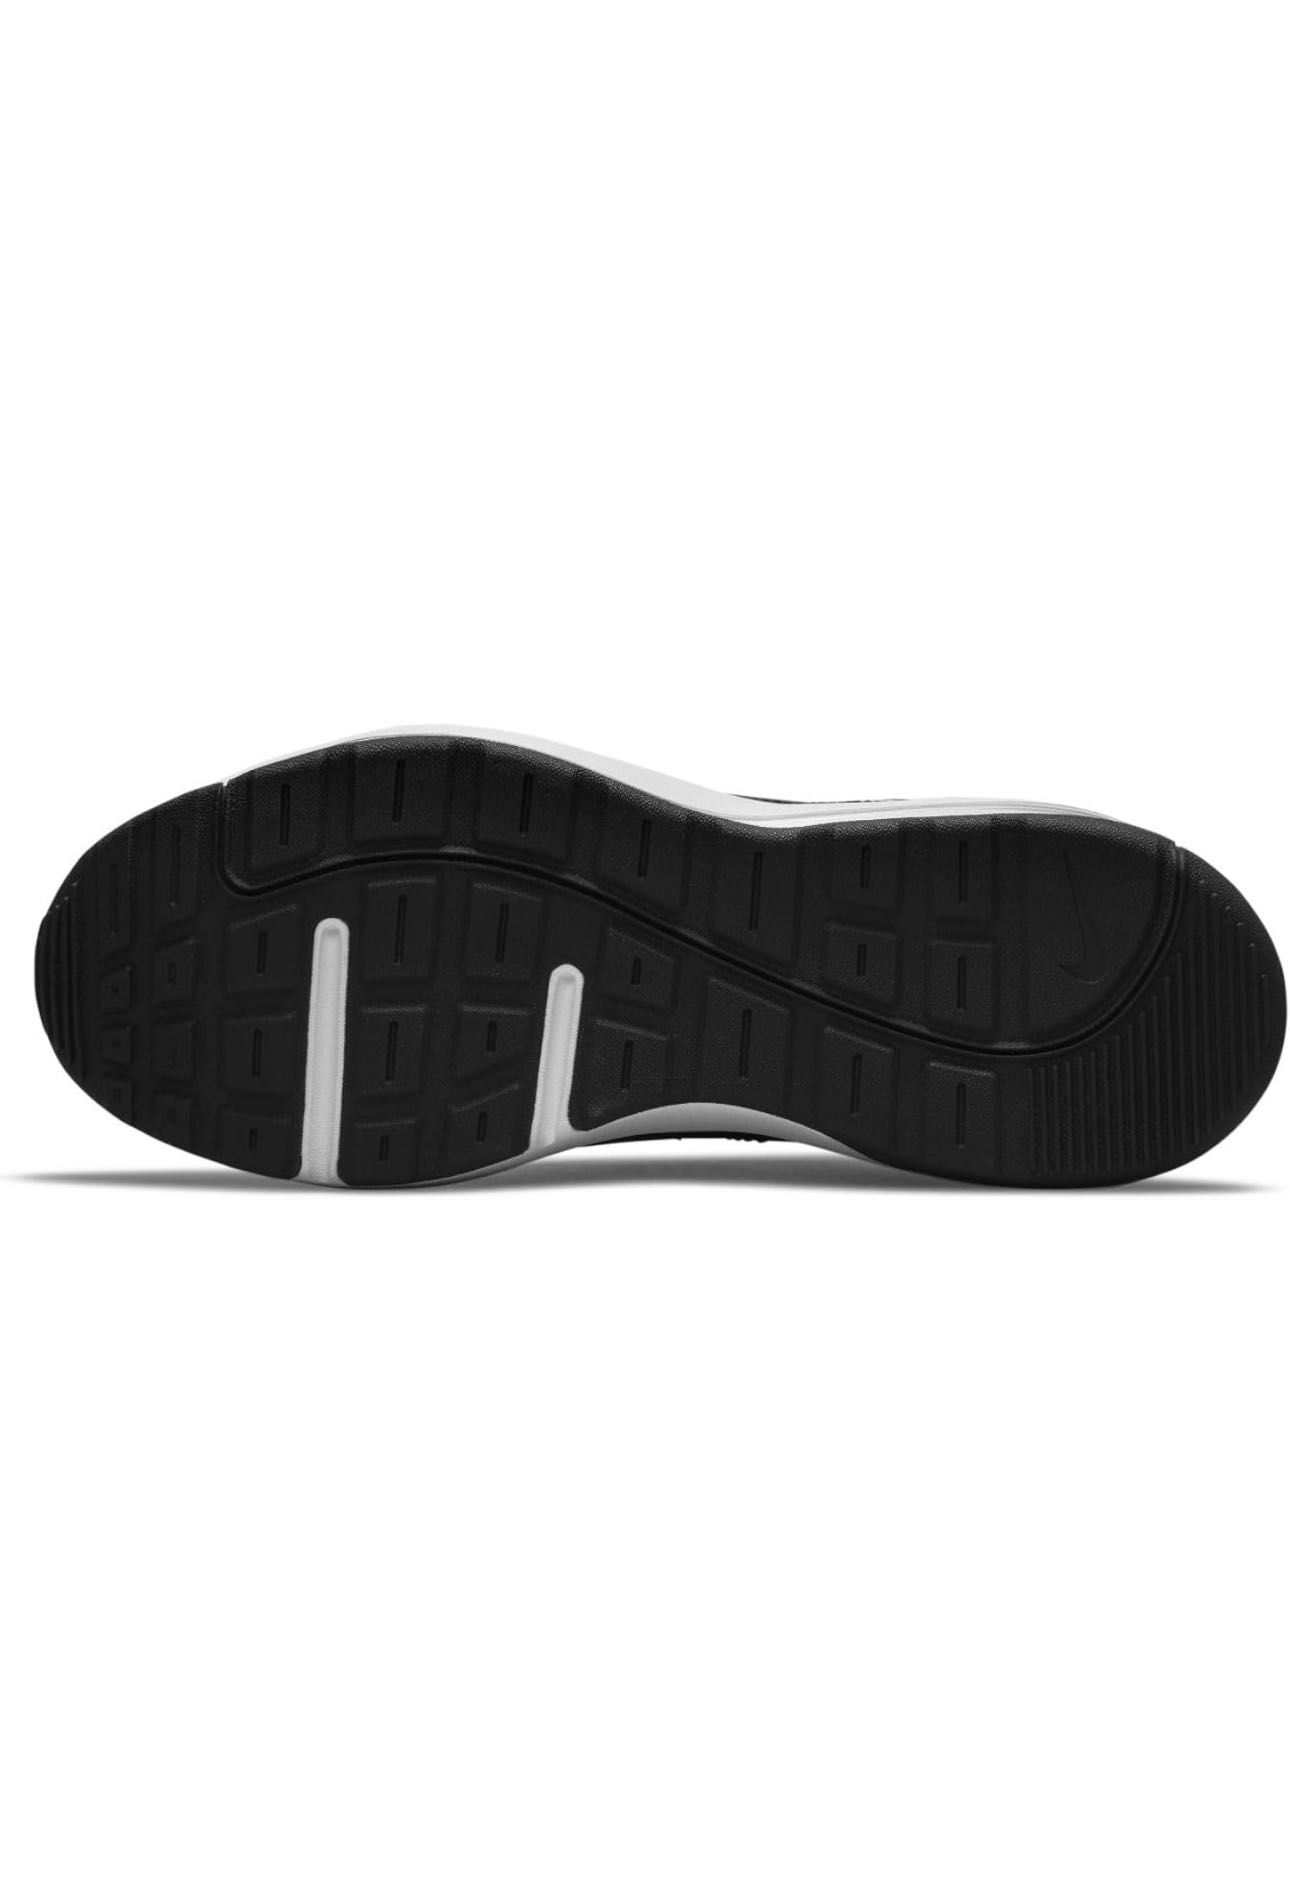 Nike Air Max Ap Black Edition